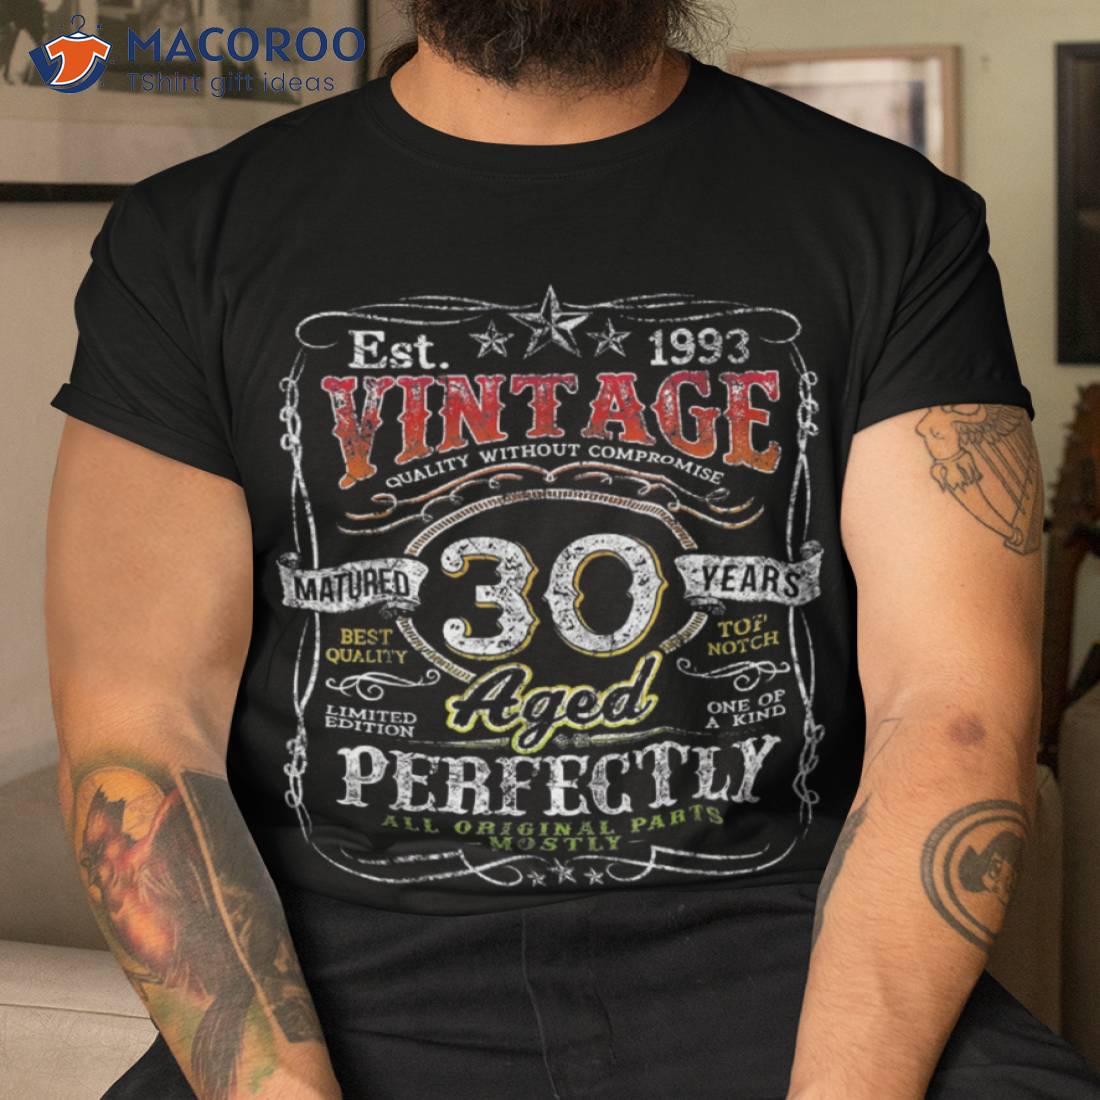 Limited James Harden Shirt Vintage 90s James Harden Tshirt 